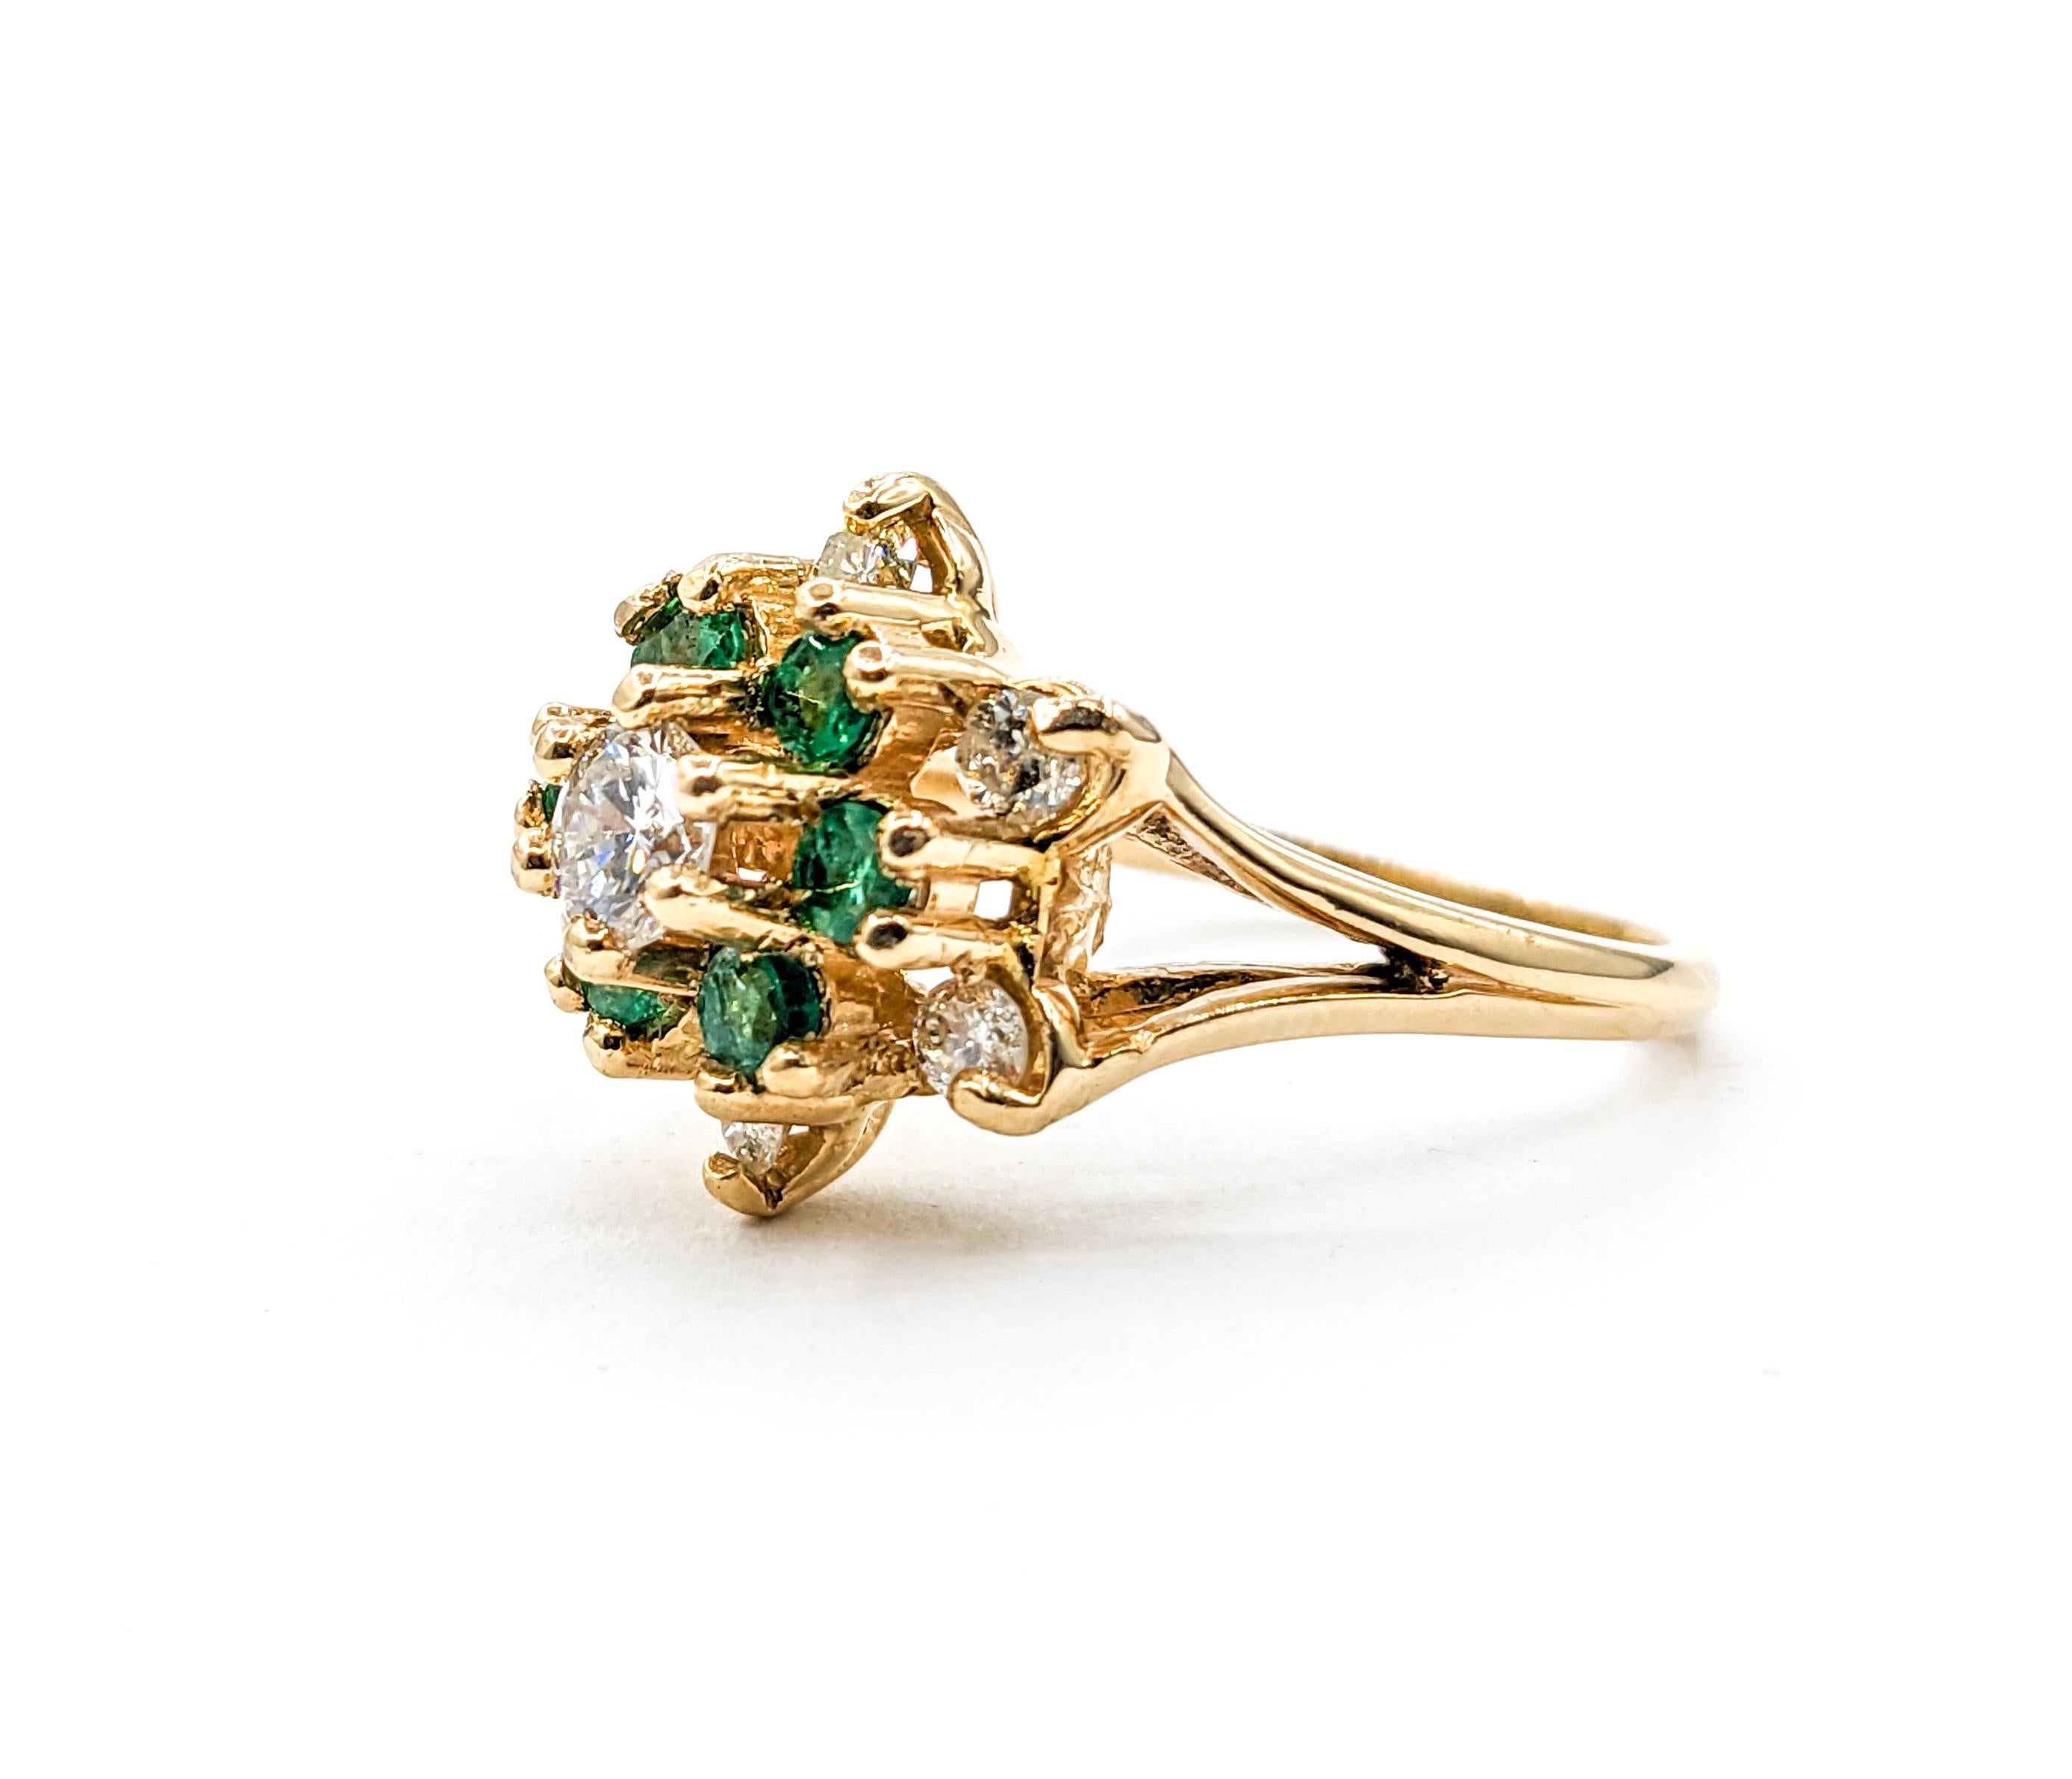 Vintage Star Cluster-Ring aus Gelbgold mit Smaragd und Diamant in Gelbgold

Entdecken Sie den Charme dieses wunderschönen Smaragd- und Diamant-Clusterrings, der in 14-karätigem Gelbgold gefertigt ist. Dieser Ring besticht durch ein wunderschönes